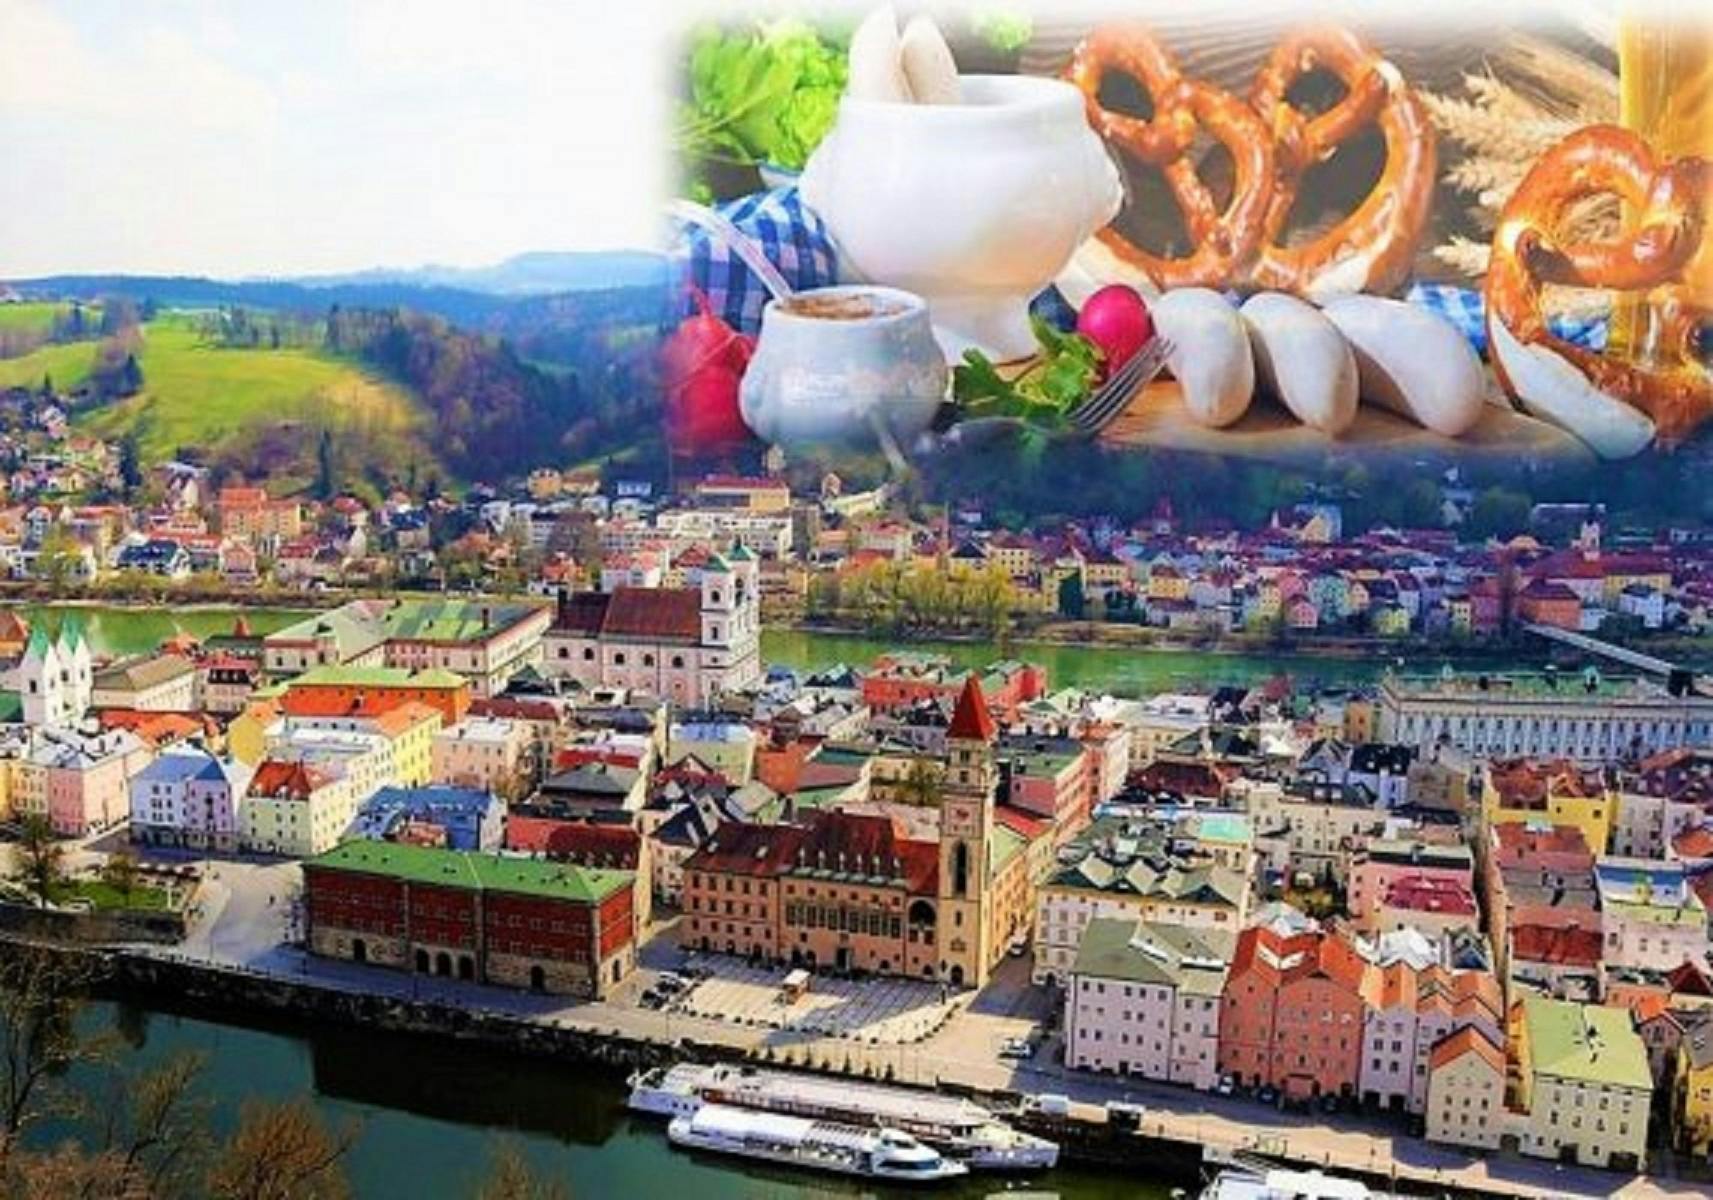 Rali de aventura em Passau "um thriller vegano"